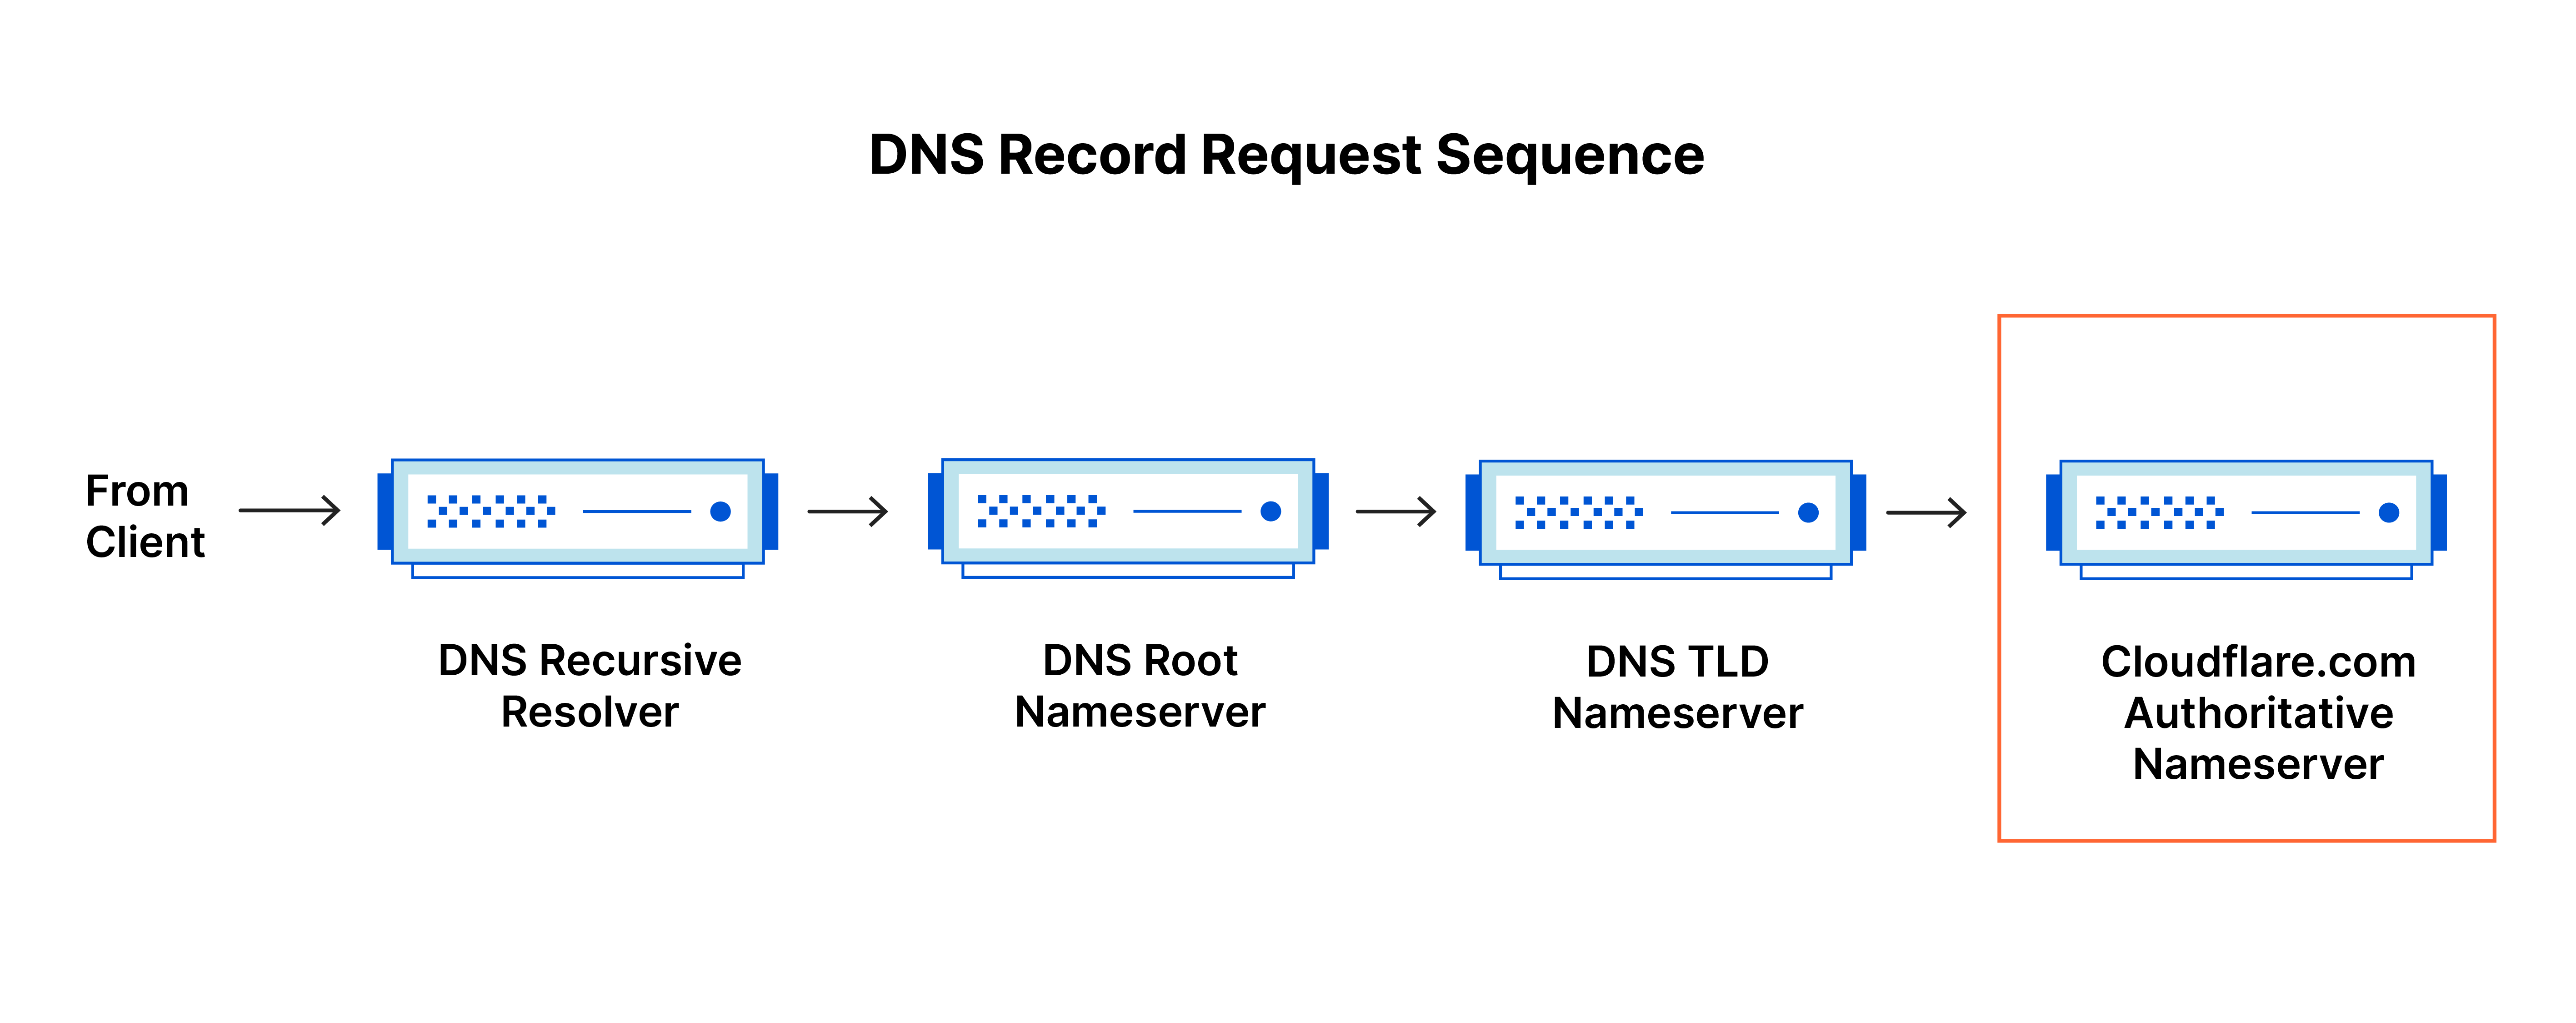 Secuencia de solicitud de registro DNS: la consulta DNS llega al servidor de nombres autoritativo para cloudflare.com